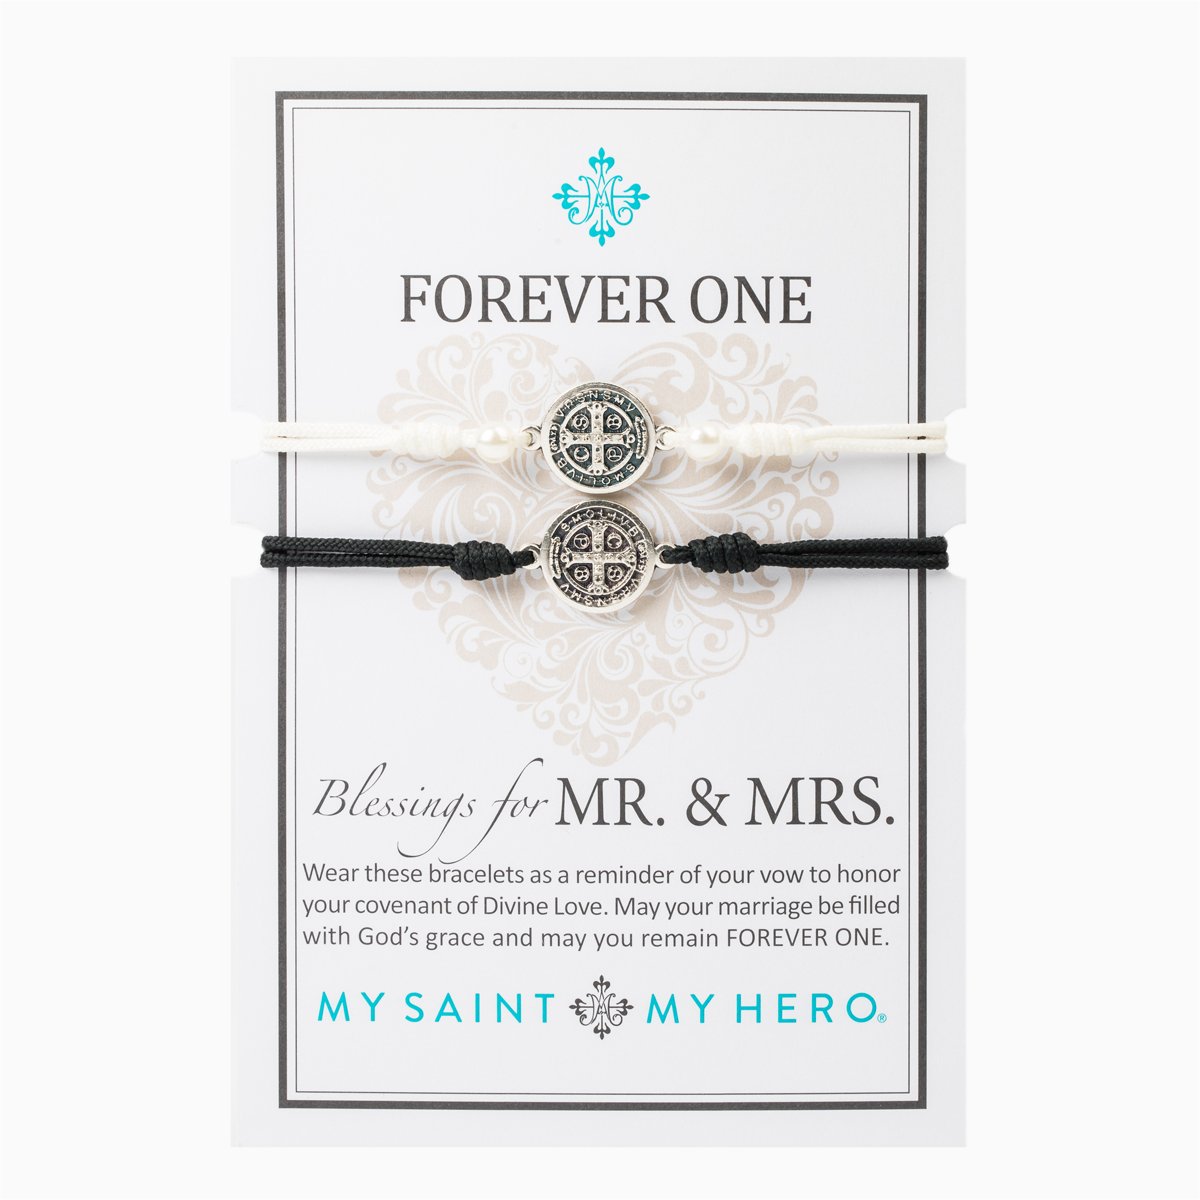 Forever One - Mr. & Mrs. Blessing Bracelets